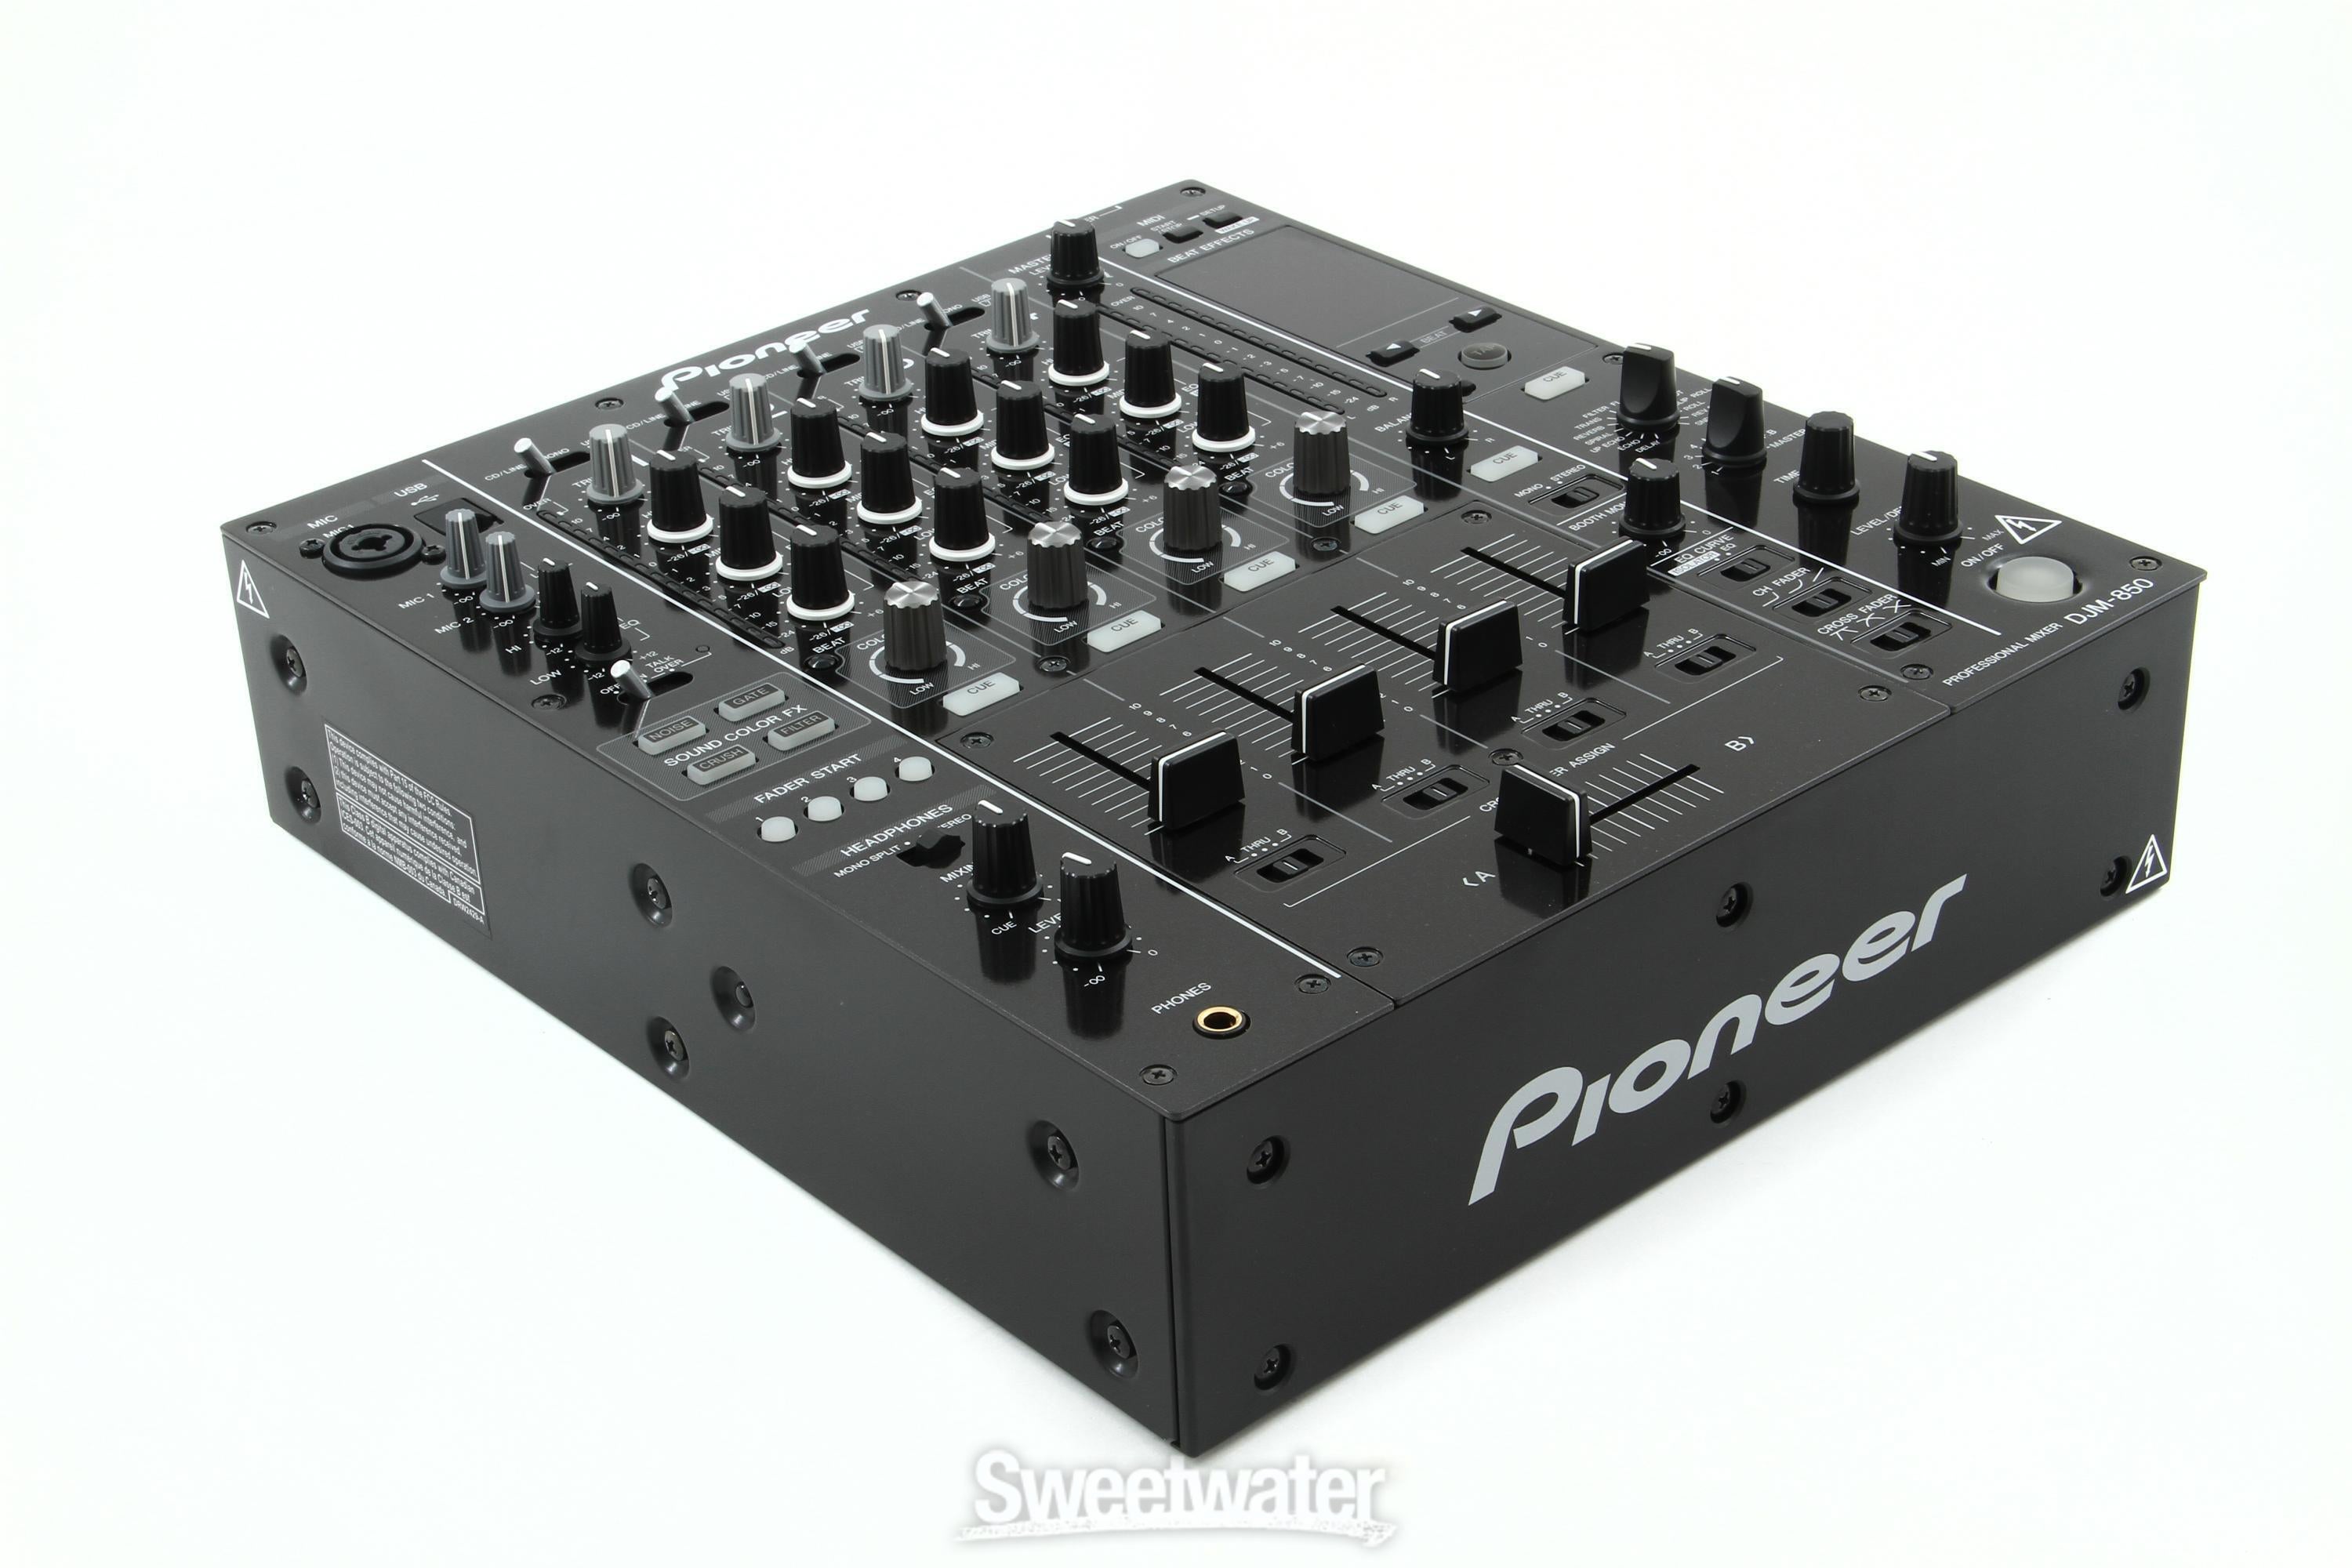 Pioneer DJ DJM-850